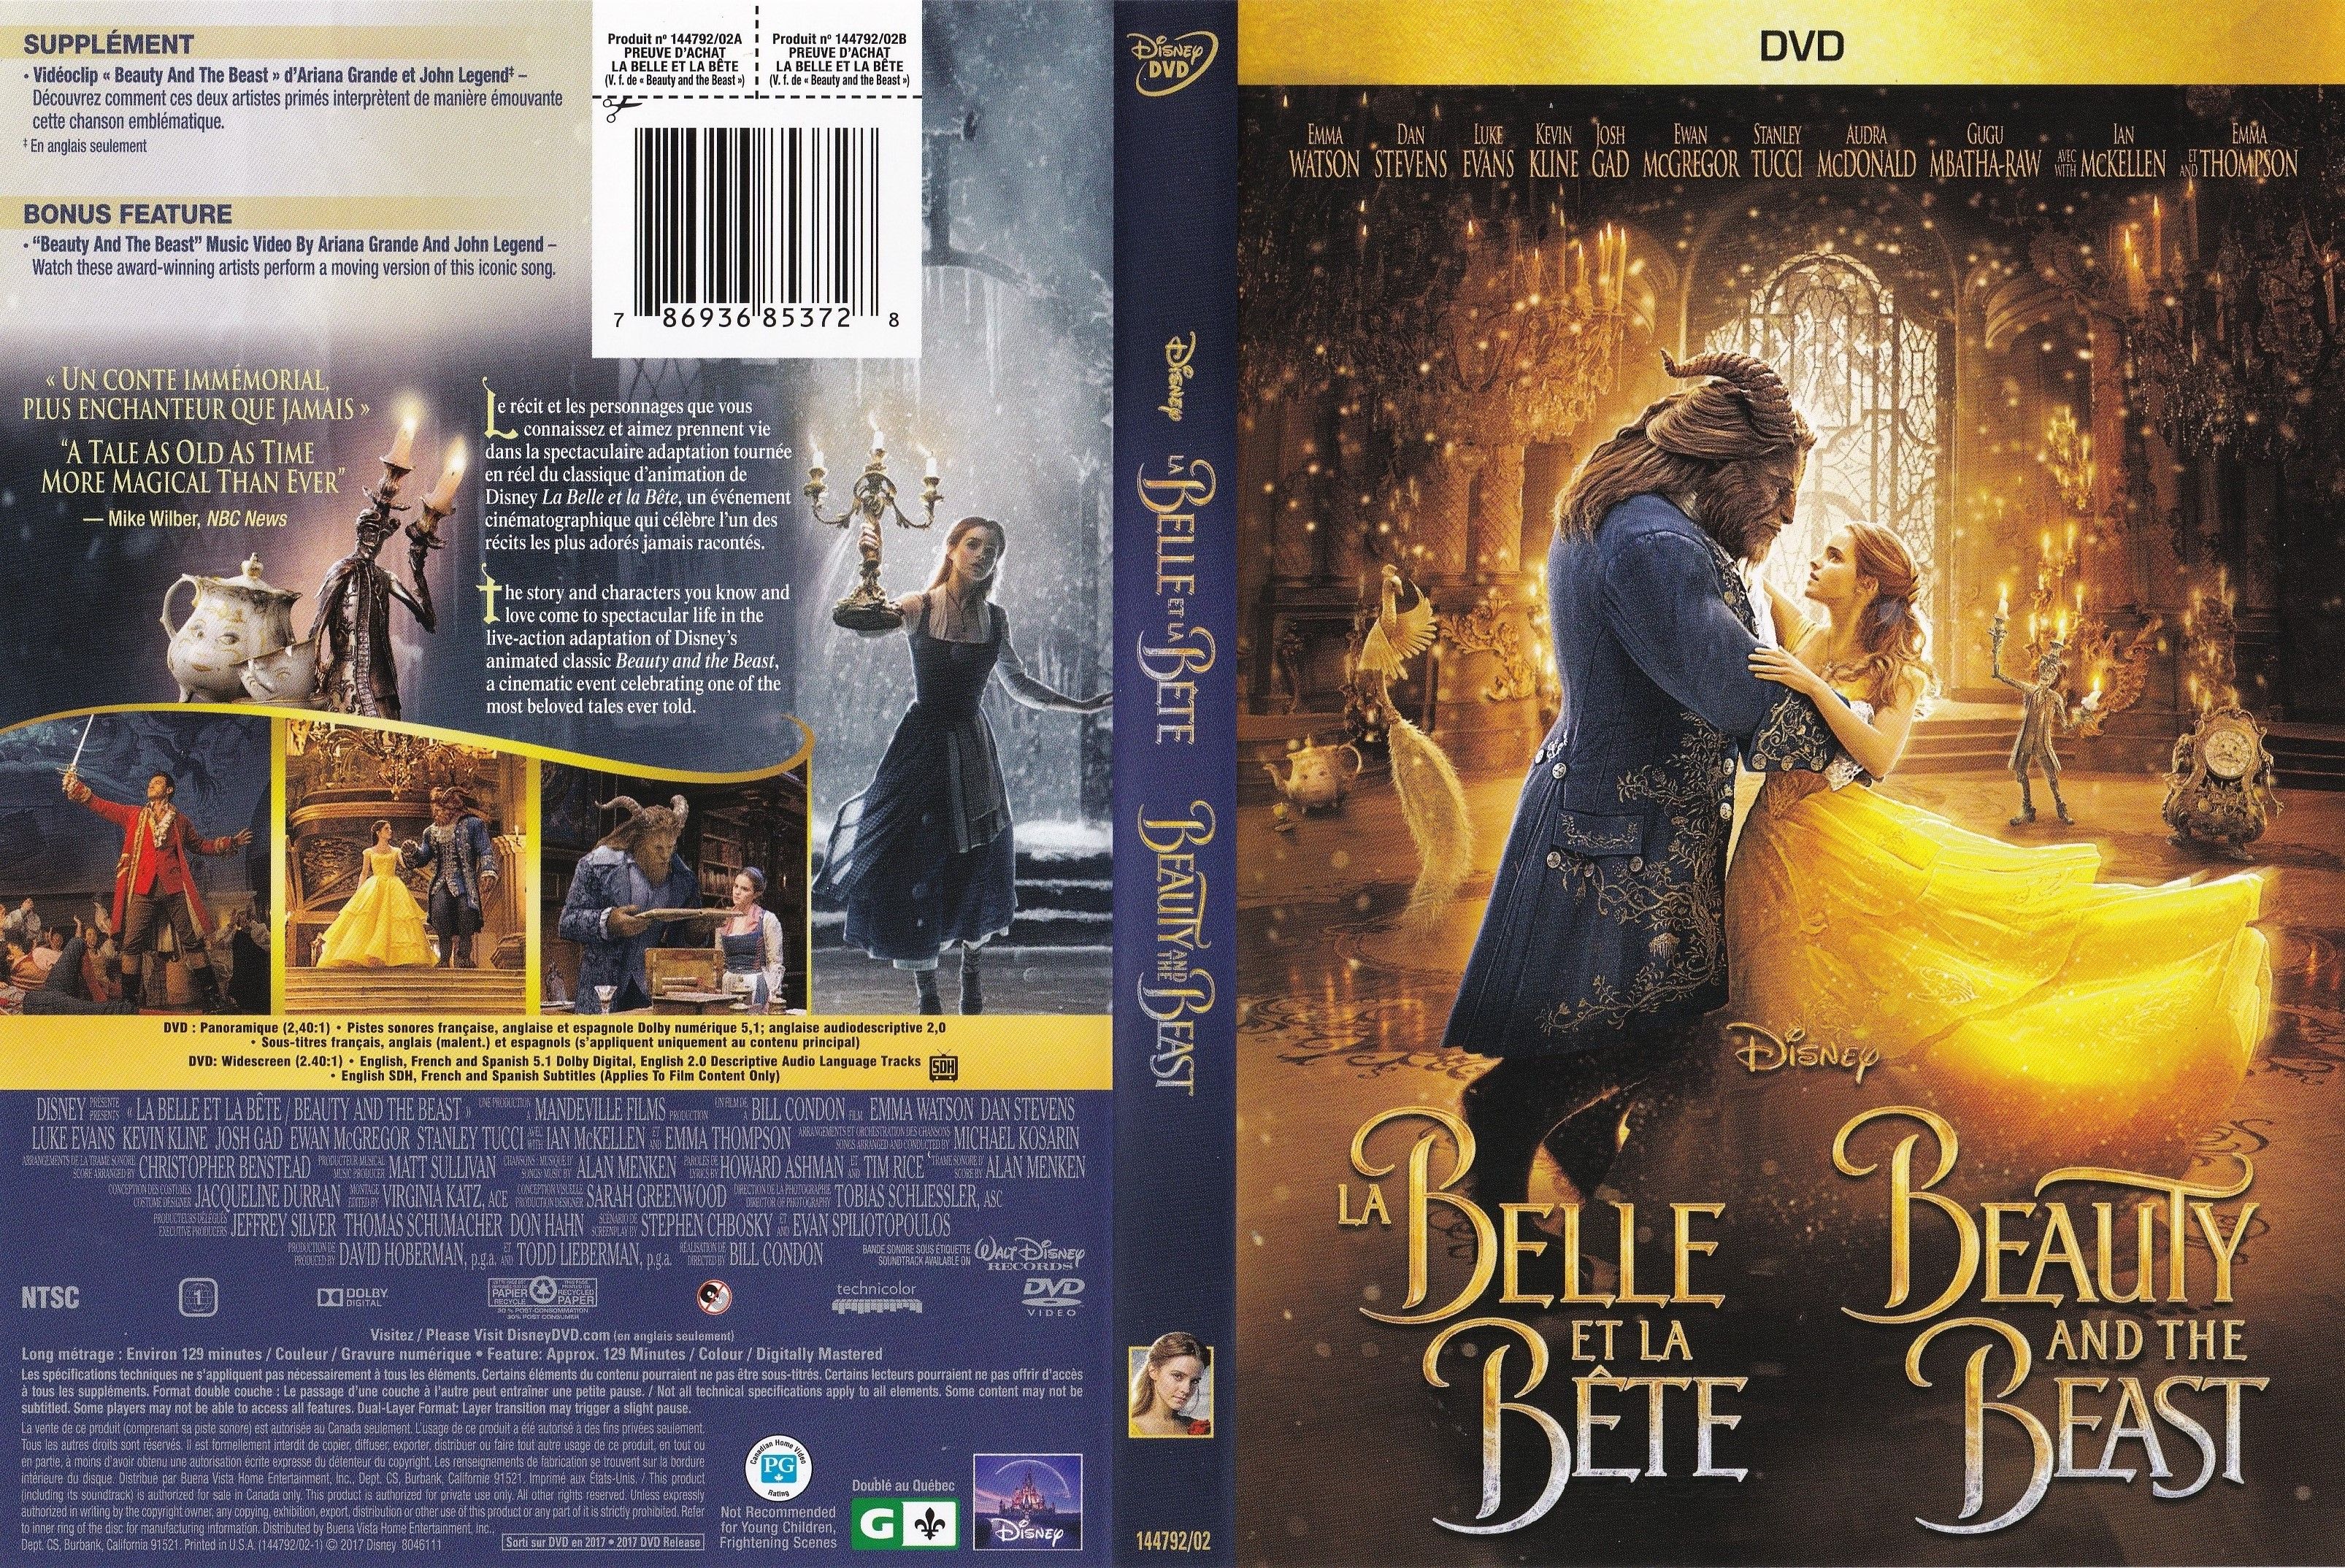 Jaquette DVD La belle et la bete (2017) (canadienne)